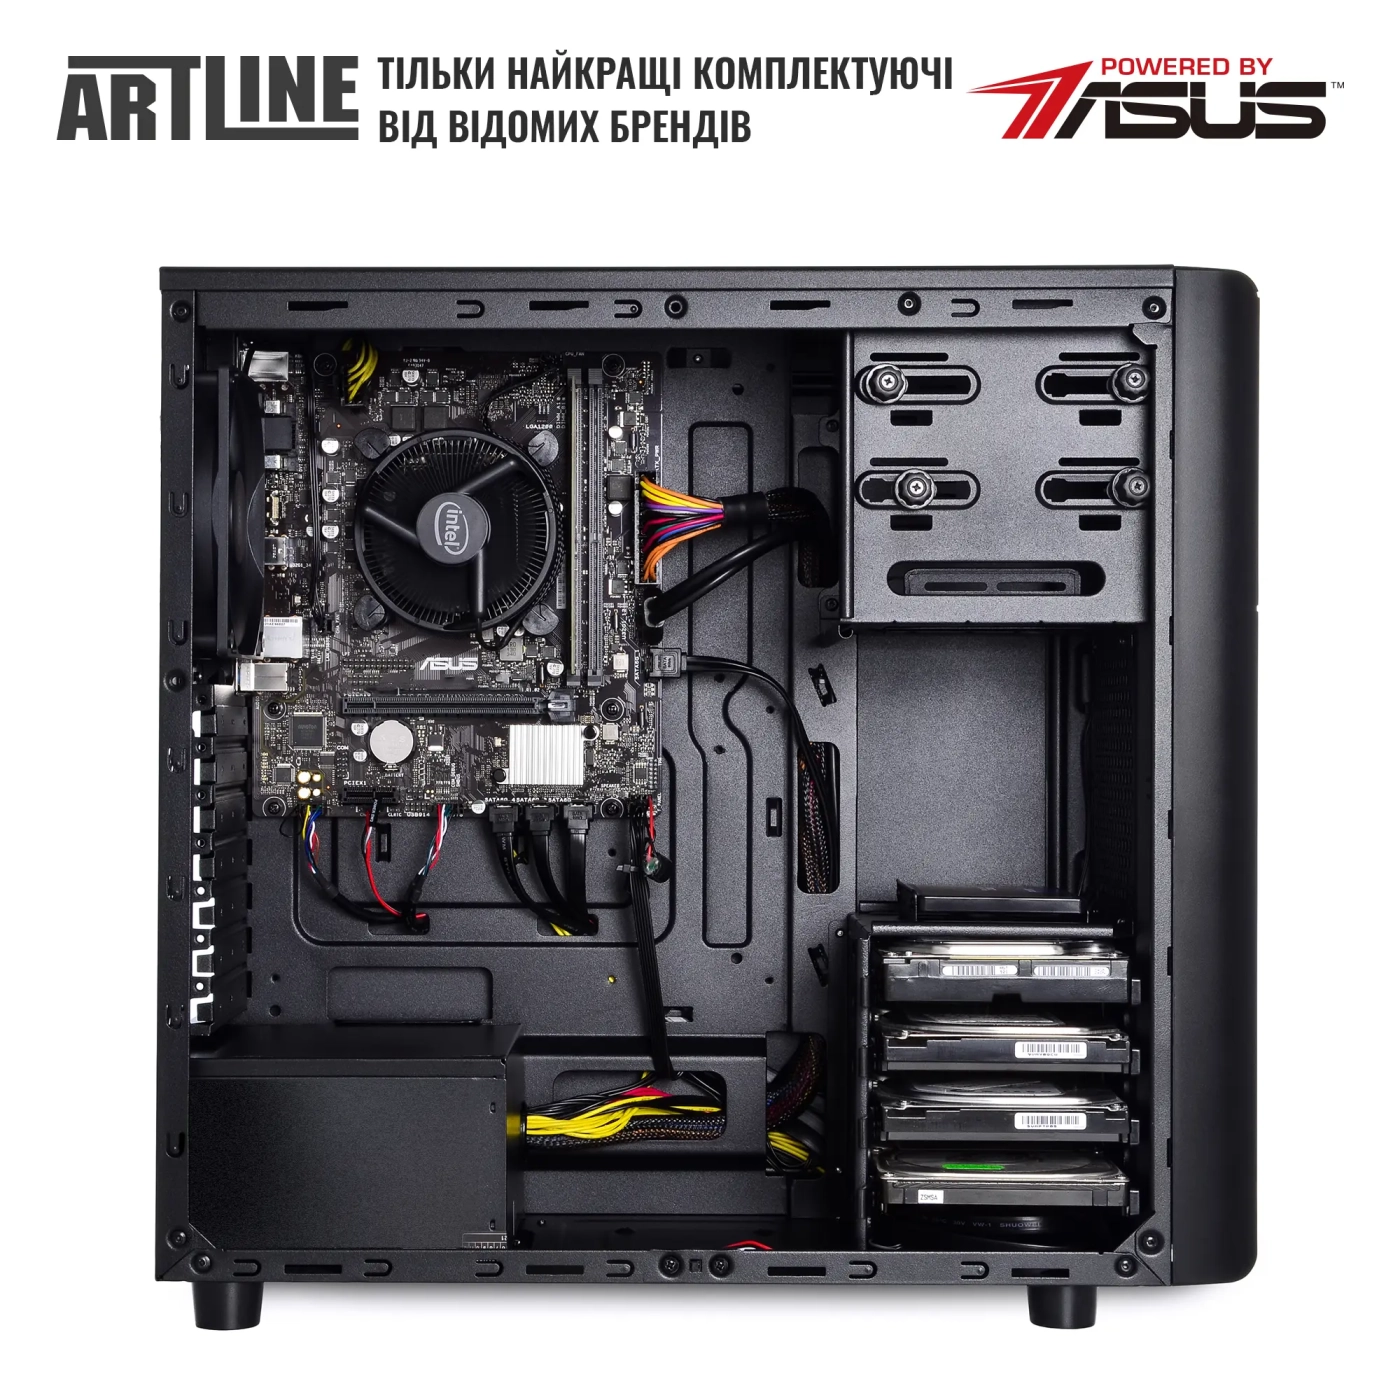 Купить Сервер ARTLINE Business T35 (T35v39) - фото 4